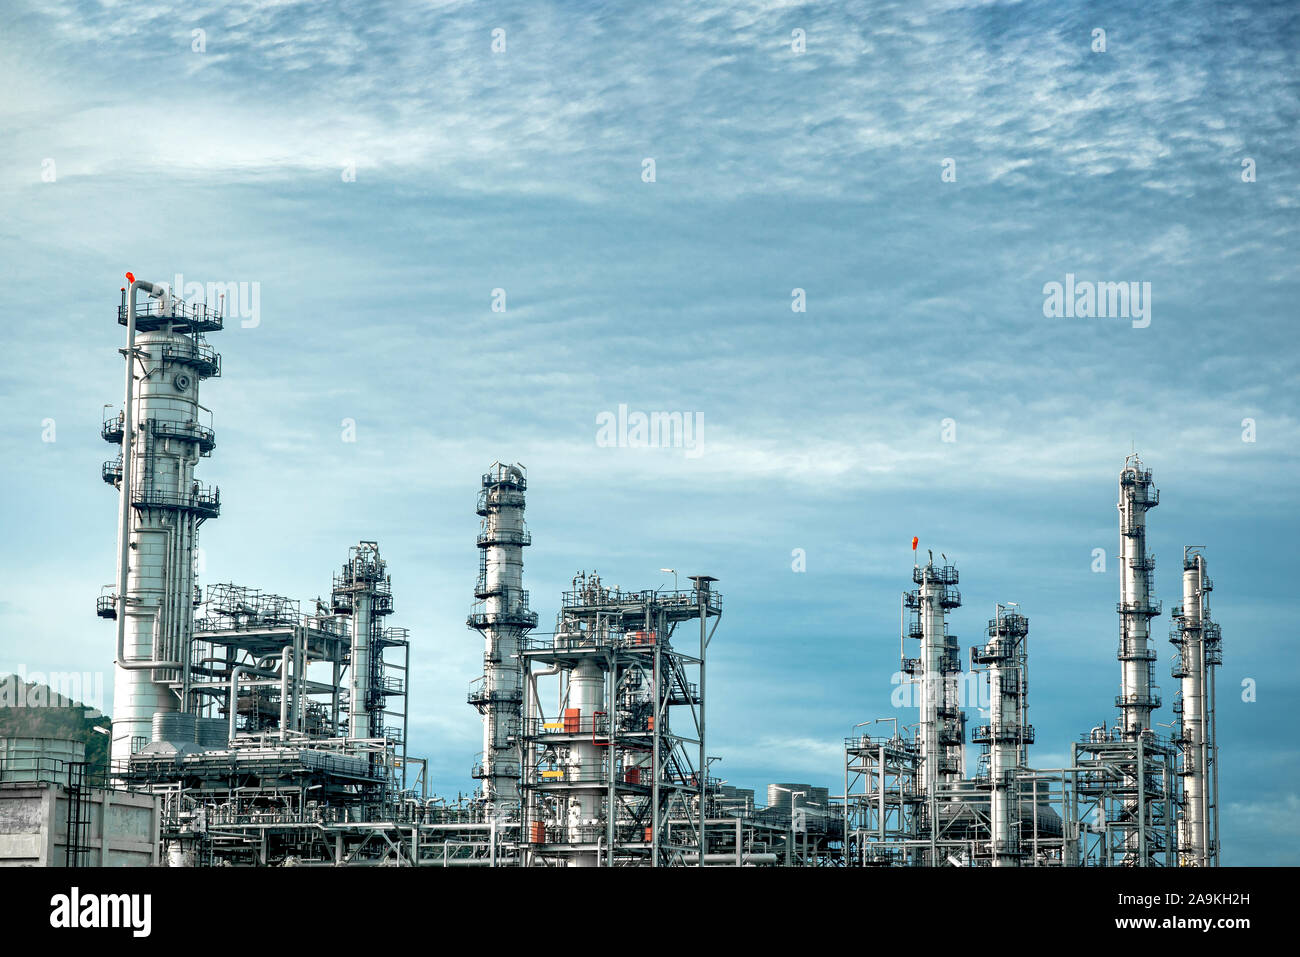 In der Nähe von Industriellen Blick auf Ölraffinerie anlage Industrie Zone mit Sunrise und bewölkter Himmel Stockfoto